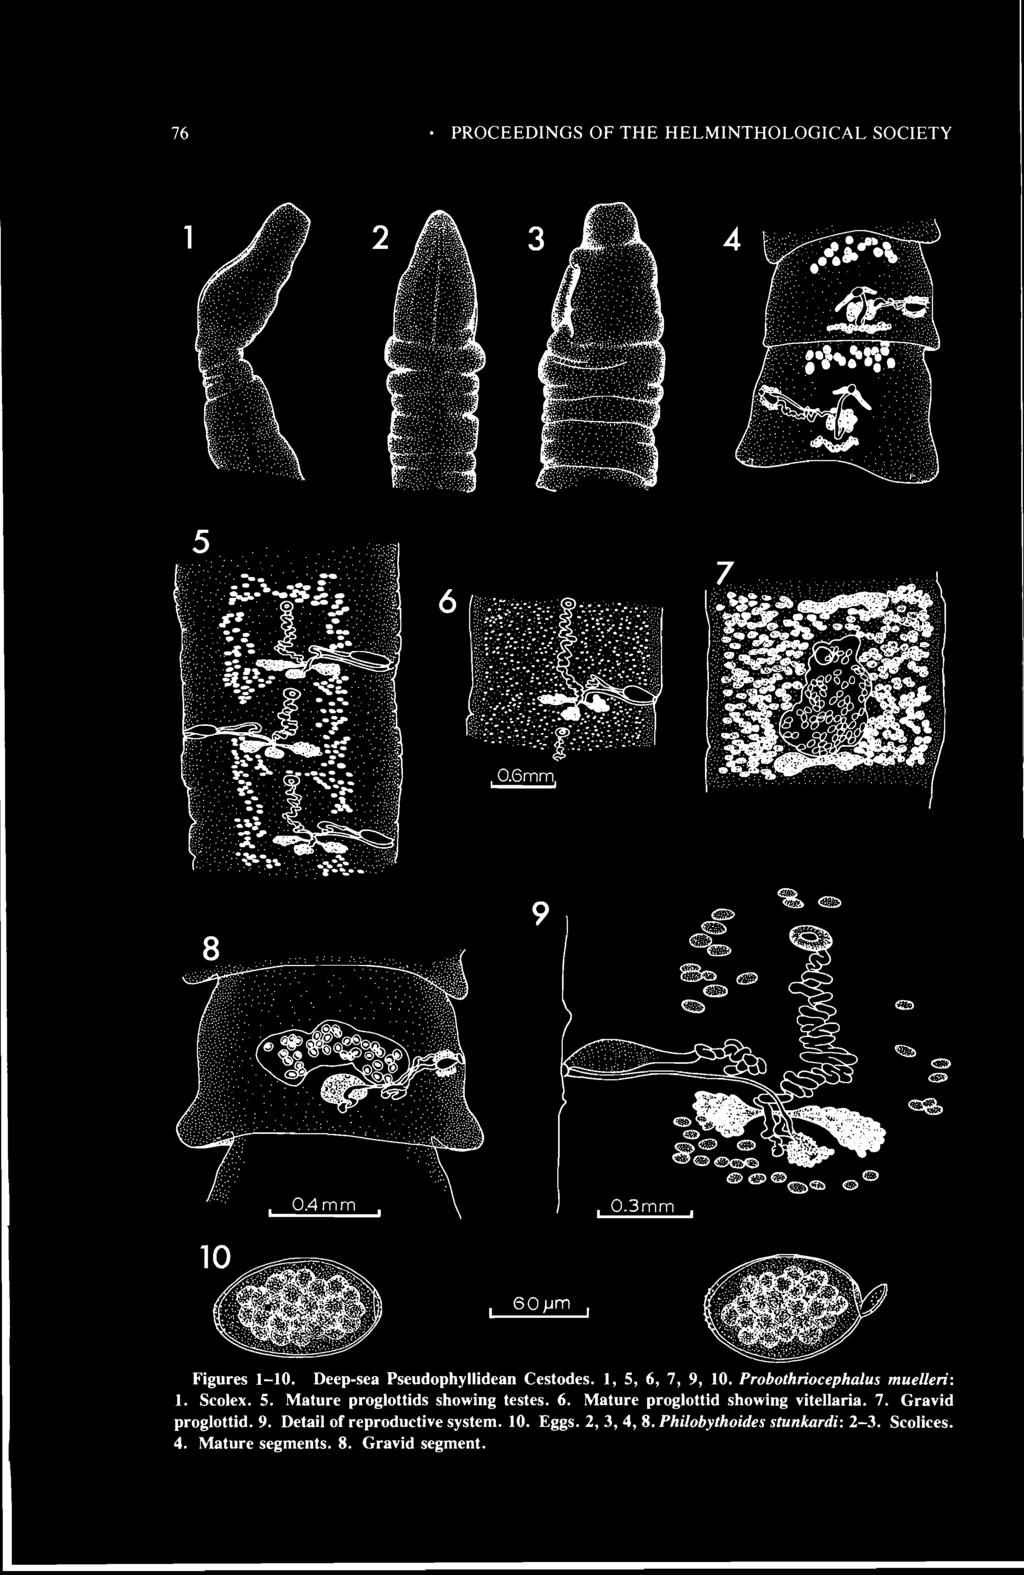 76 PROCEEDINGS OF THE HELMINTHOLOGICAL SOCIETY Figures 1-10. Deep-sea Pseudophyllidean Cestodes. 1, 5, 6, 7, 9, 10. Probothriocephalus muelleri: 1. Scolex. 5. Mature proglottids showing testes. 6. Mature proglottid showing vitellaria.